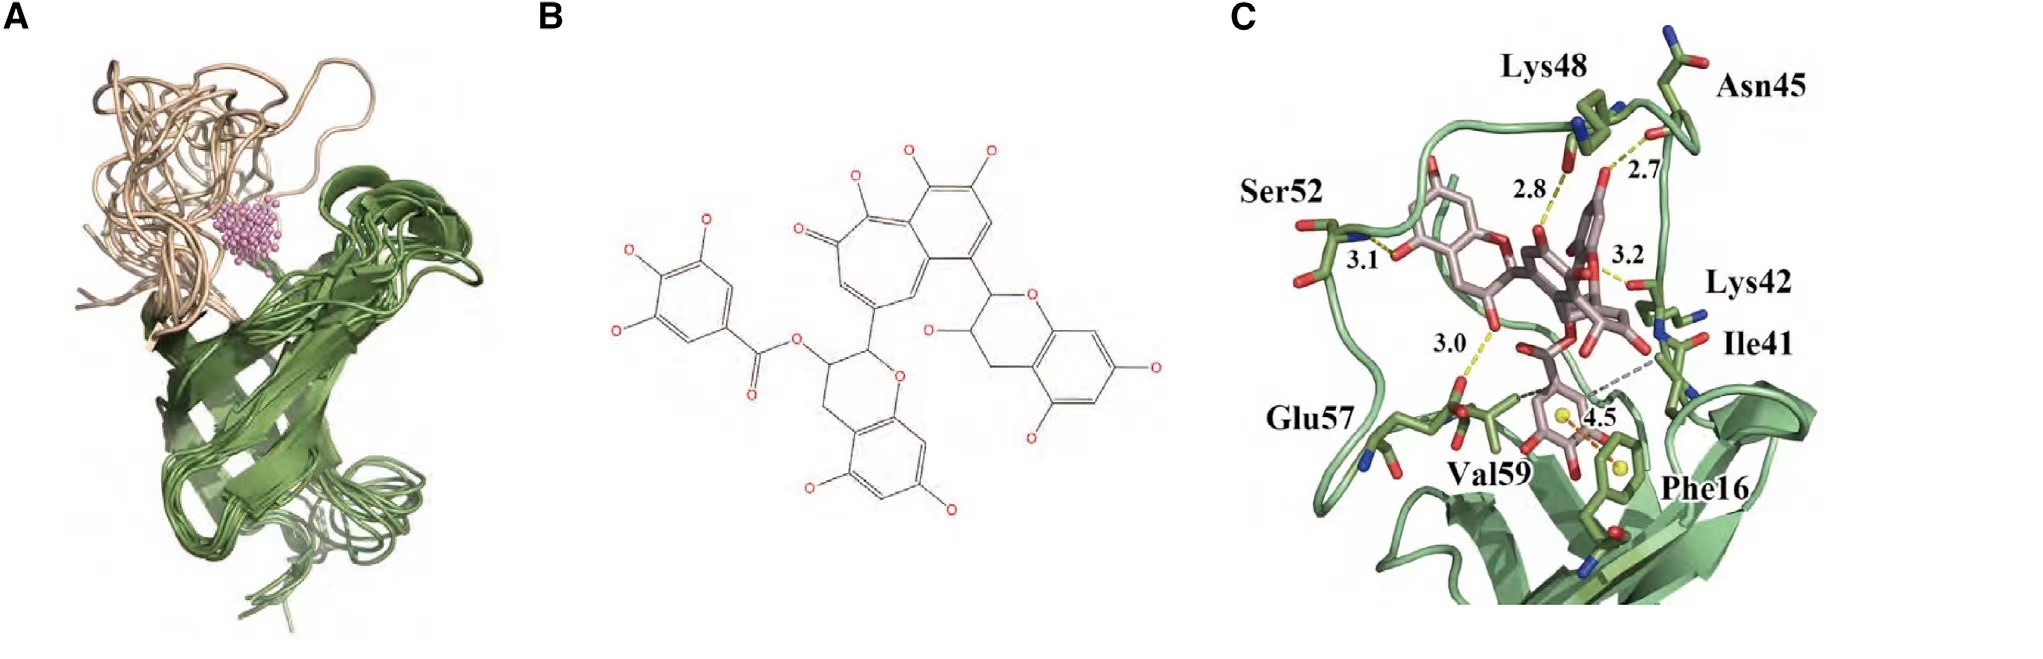 图1. (A) 小鼠 YB-1 的优化同源建模结构。(B) TF2A 的分子结构。(C) AutoDock Vina 生成的结合能最低的优化结合模式和 TF2A 与小鼠 YB-1 相互作用的关键残基。